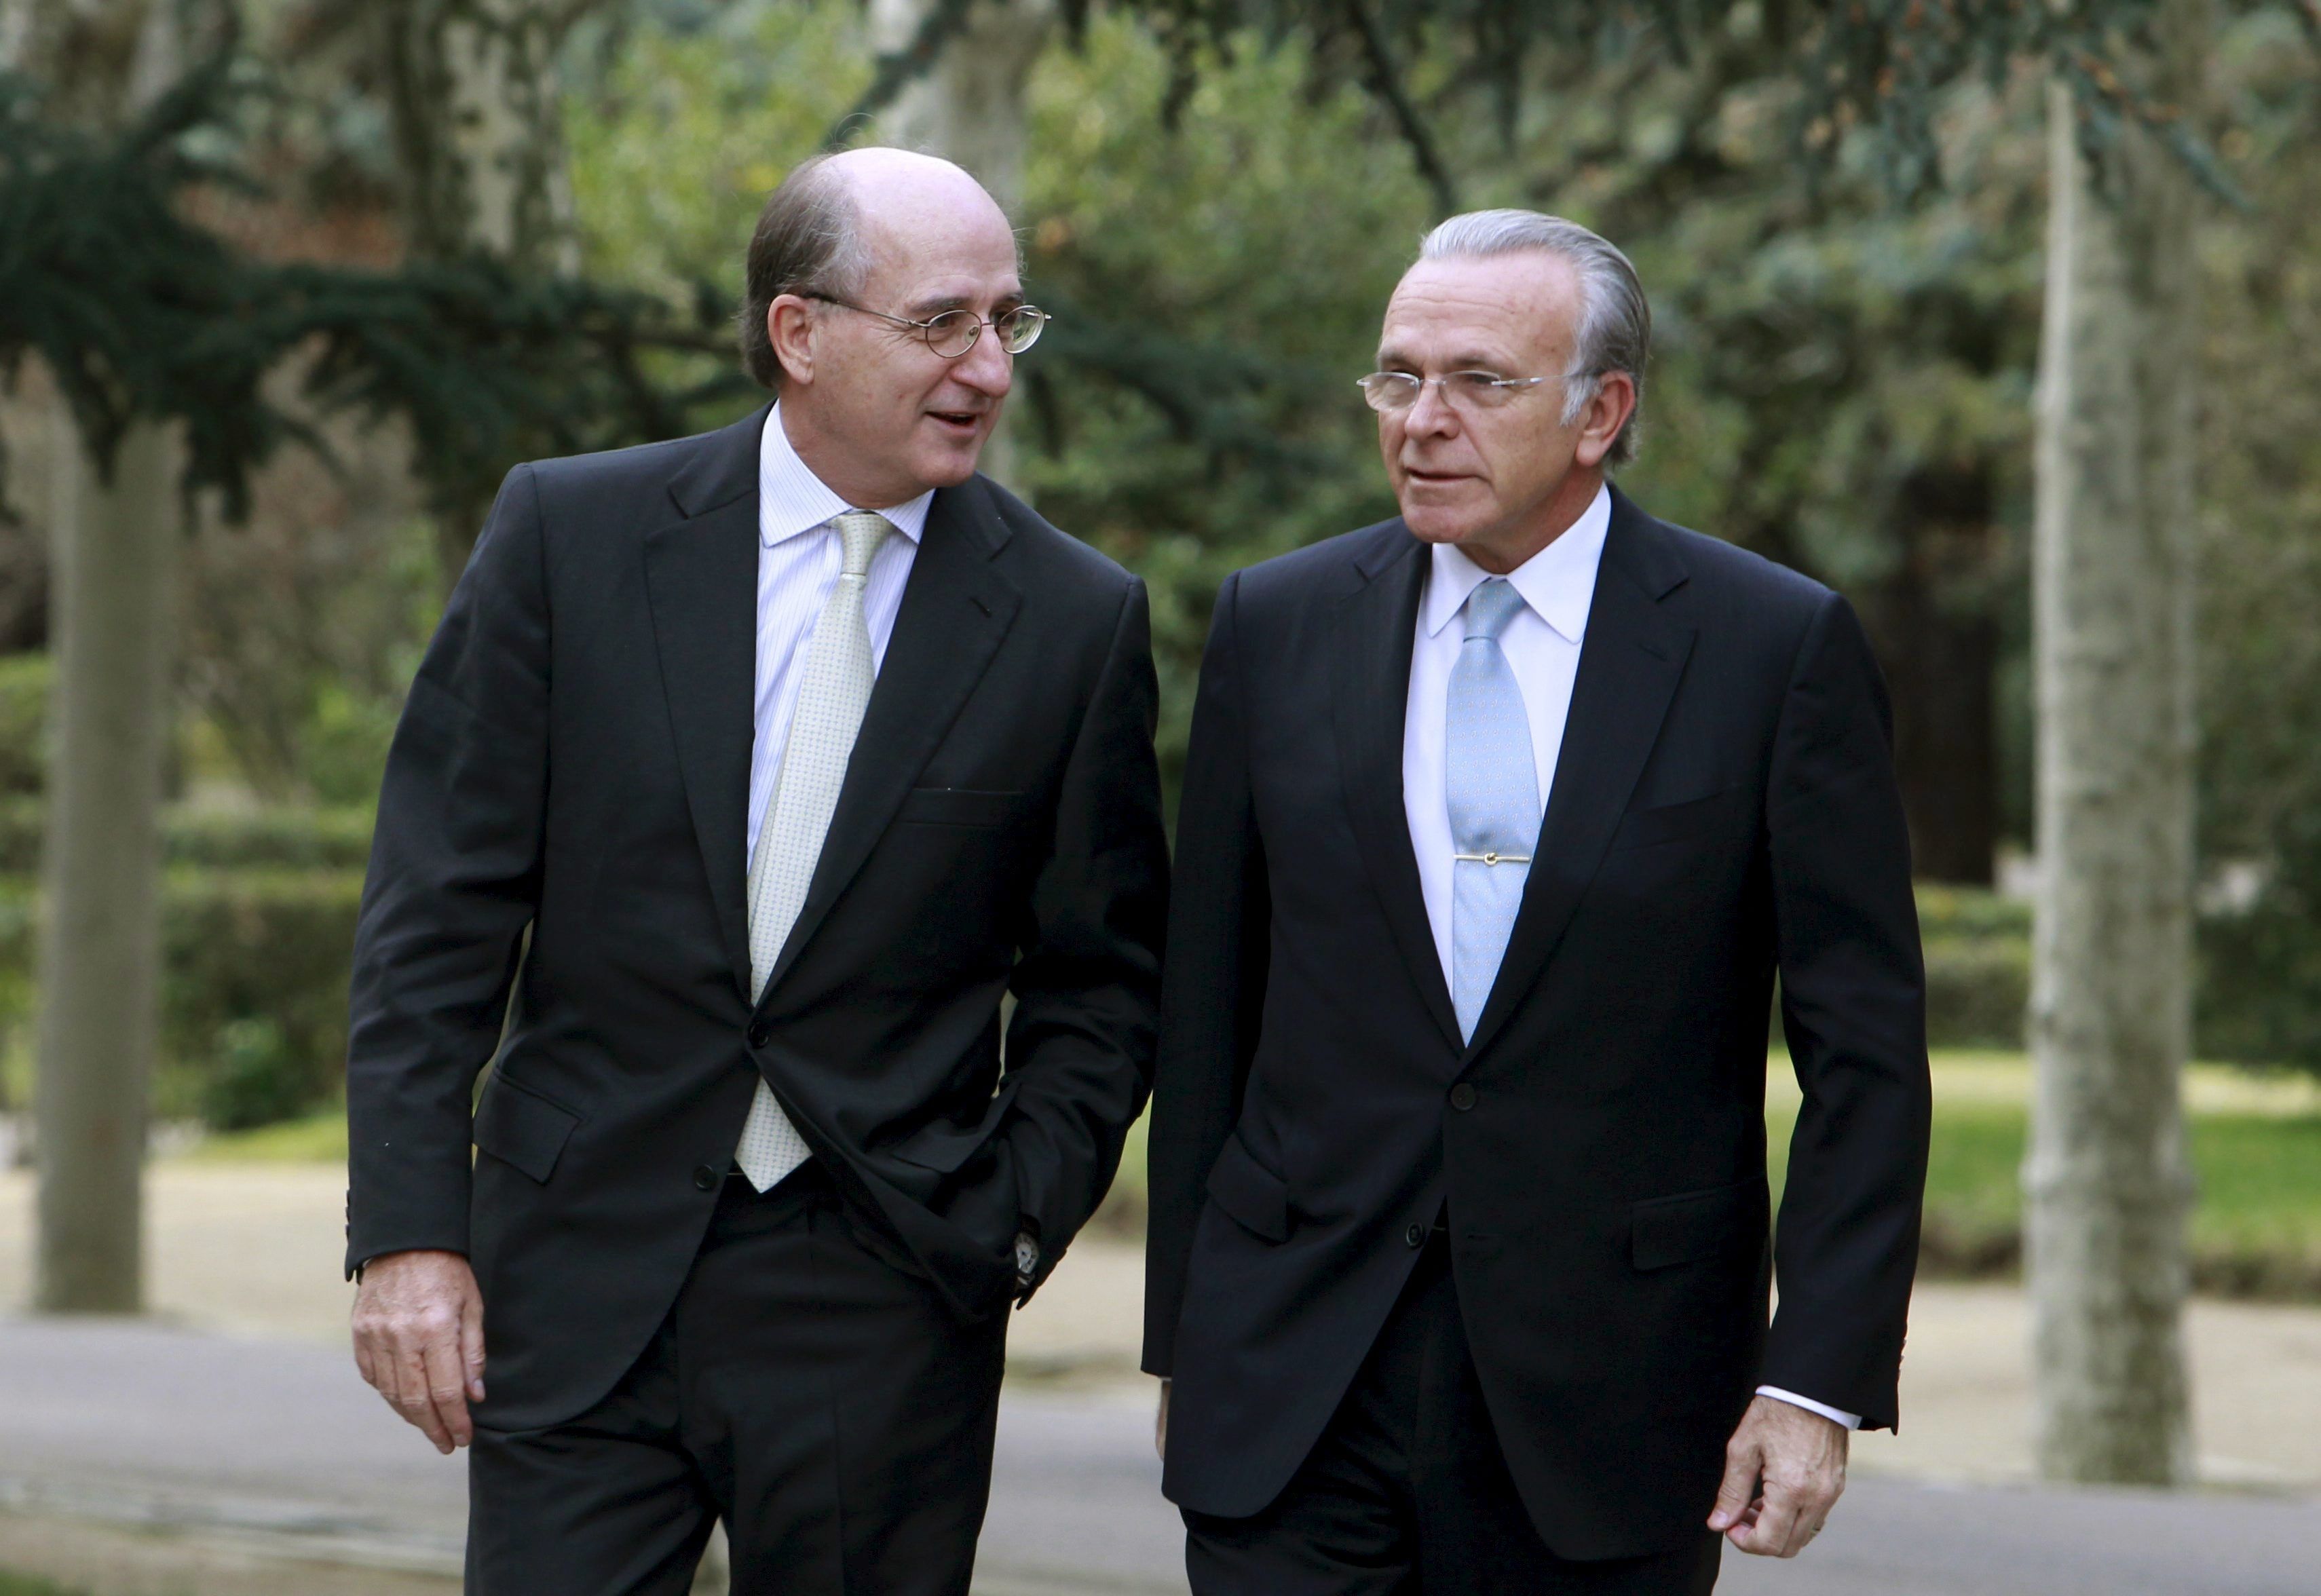 Antonio Brufau e Isidro Fainé en una imagen de 2010 cuando ambos controlaban conjuntamente Repsol